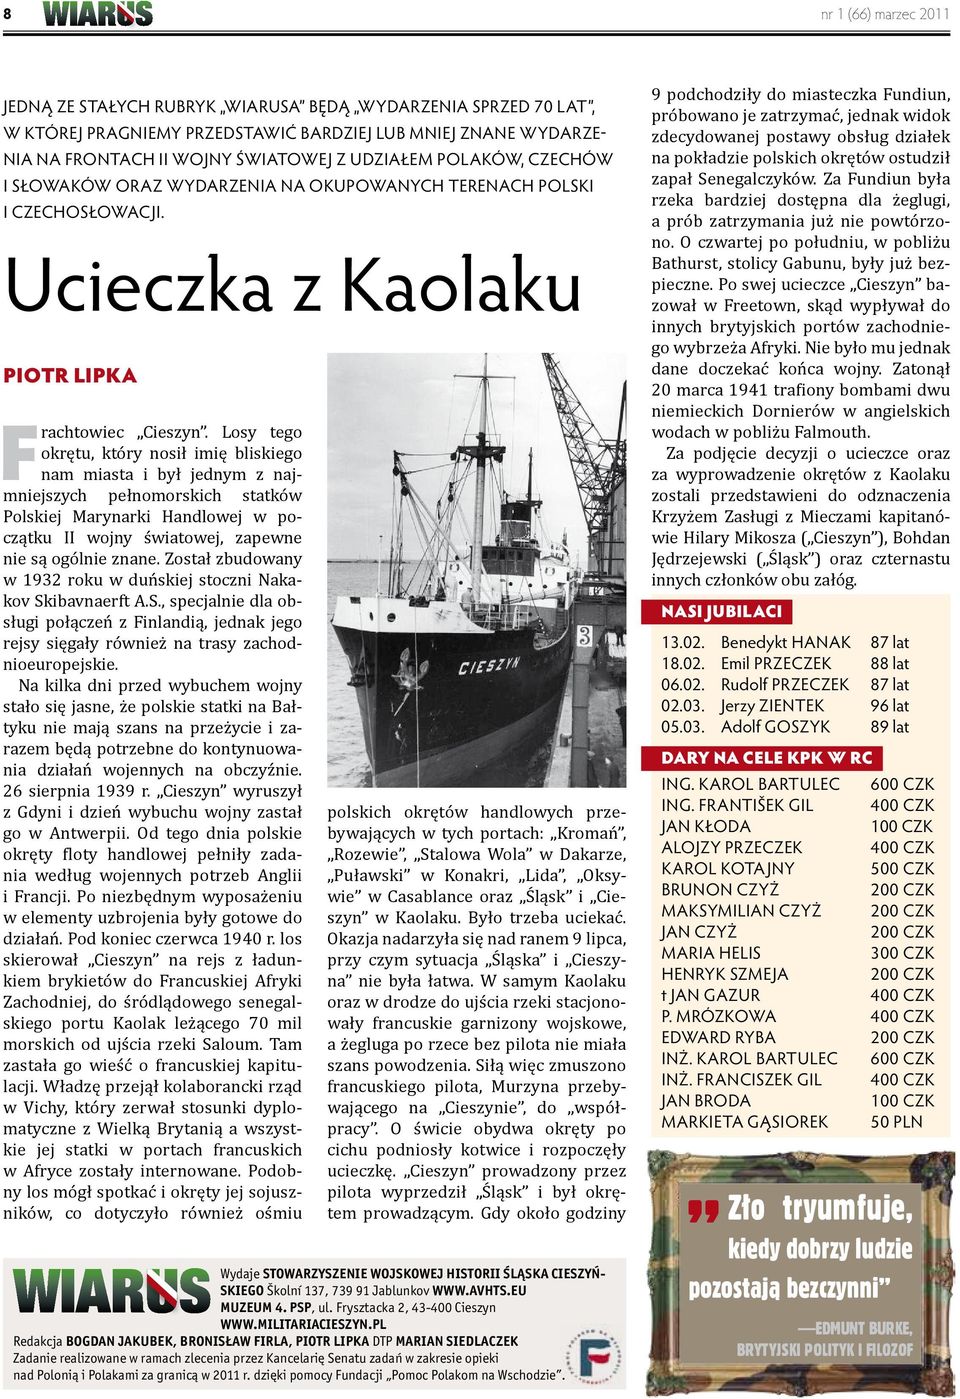 Losy tego okrętu, który nosił imię bliskiego nam miasta i był jednym z najmniejszych pełnomorskich statków Polskiej Marynarki Handlowej w początku II wojny światowej, zapewne nie są ogólnie znane.